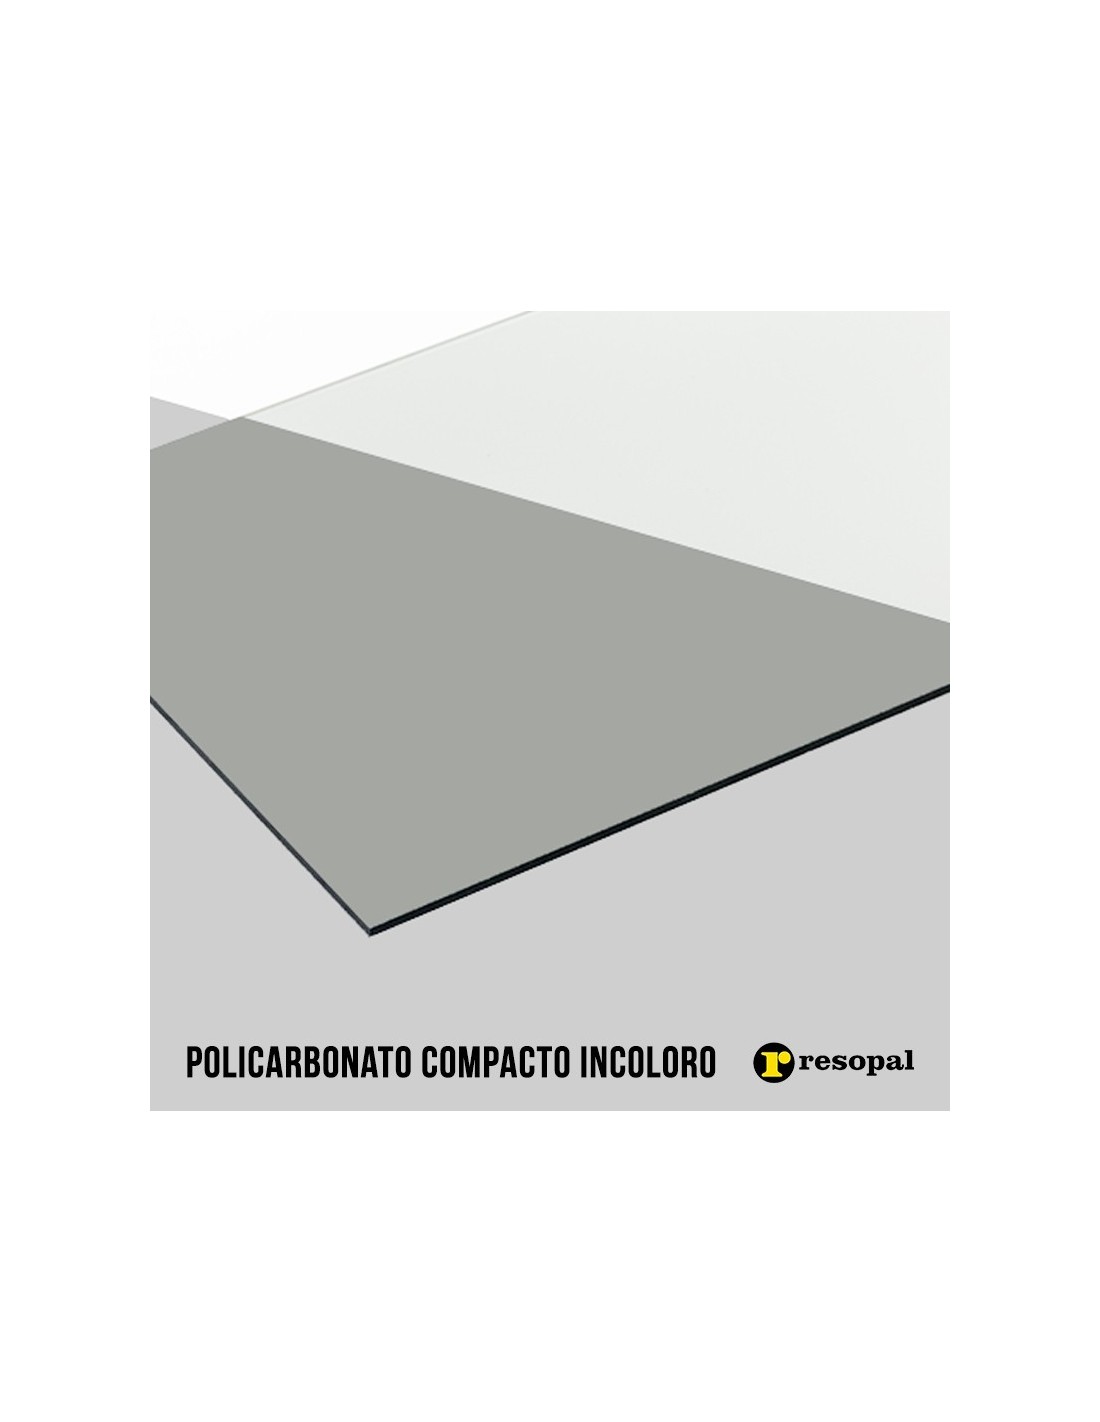 Placa de policarbonato compacto resistente al impacto y alta temperatura